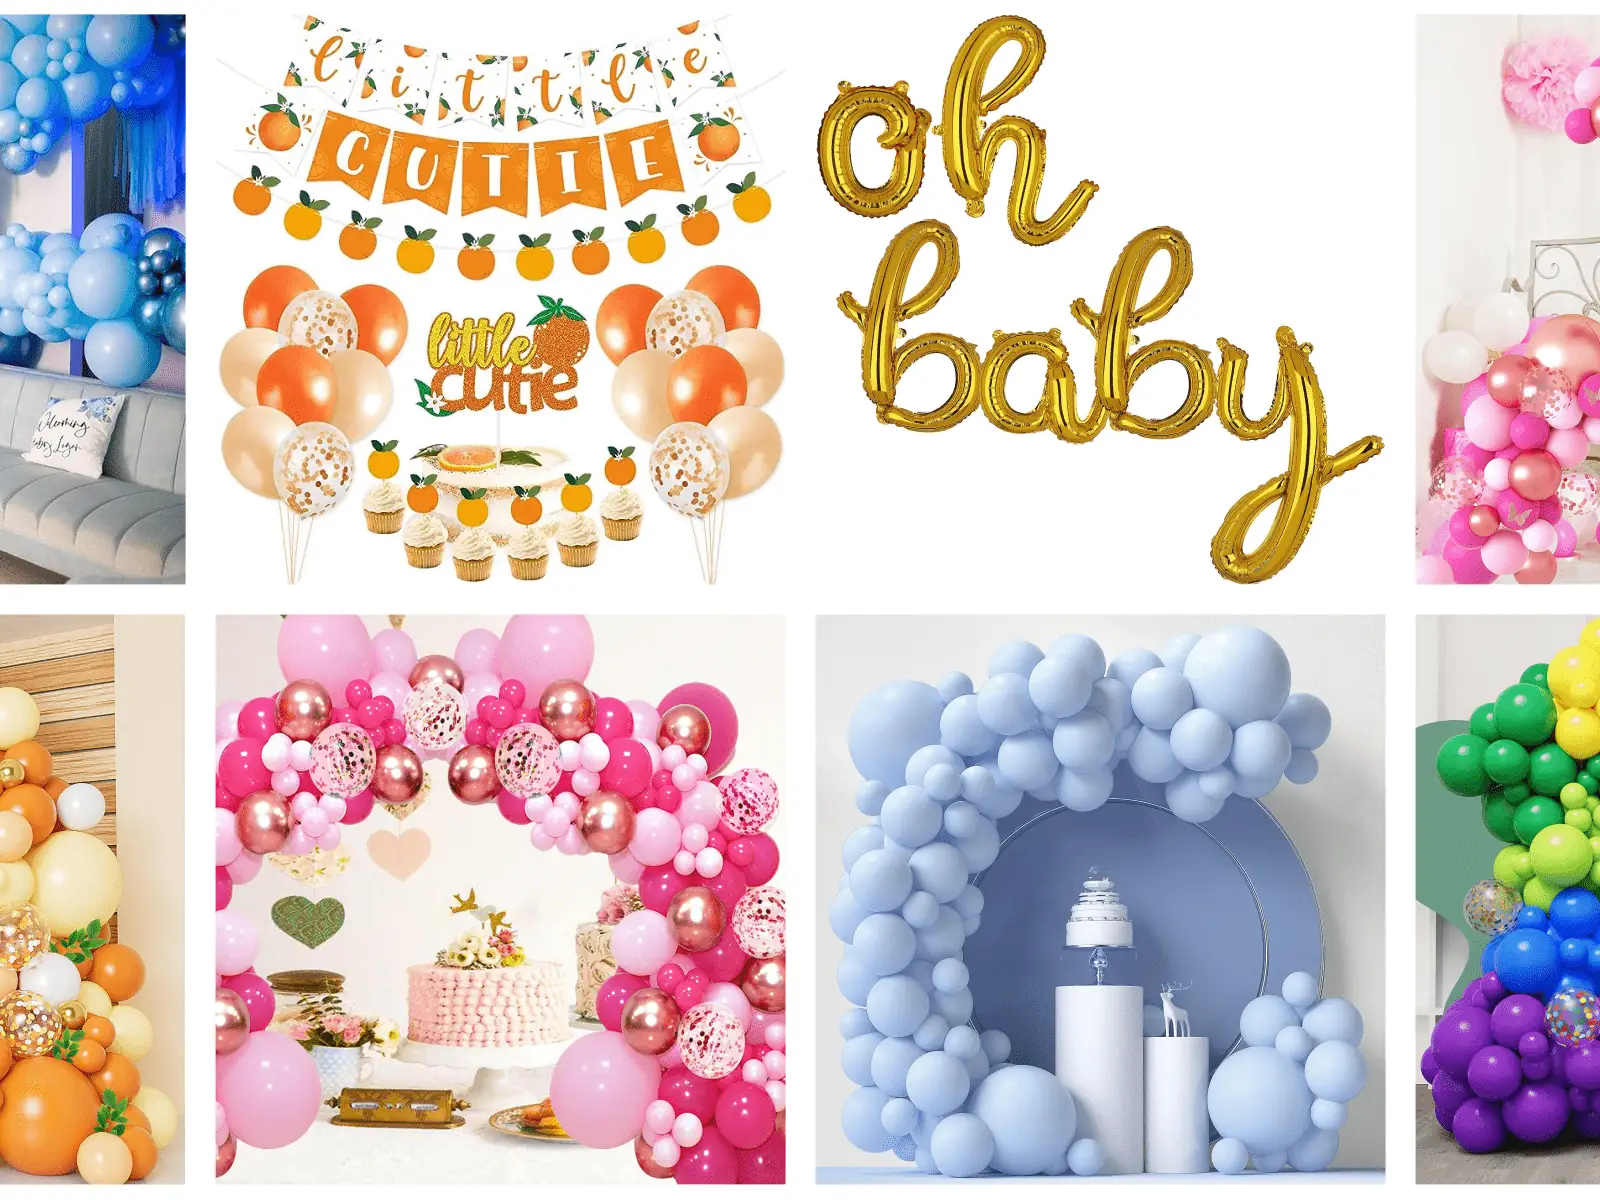 Decoración para baby shower, rápida y fácil Crea un baby shower encantador y personalizado con esta guía. Elige temas,